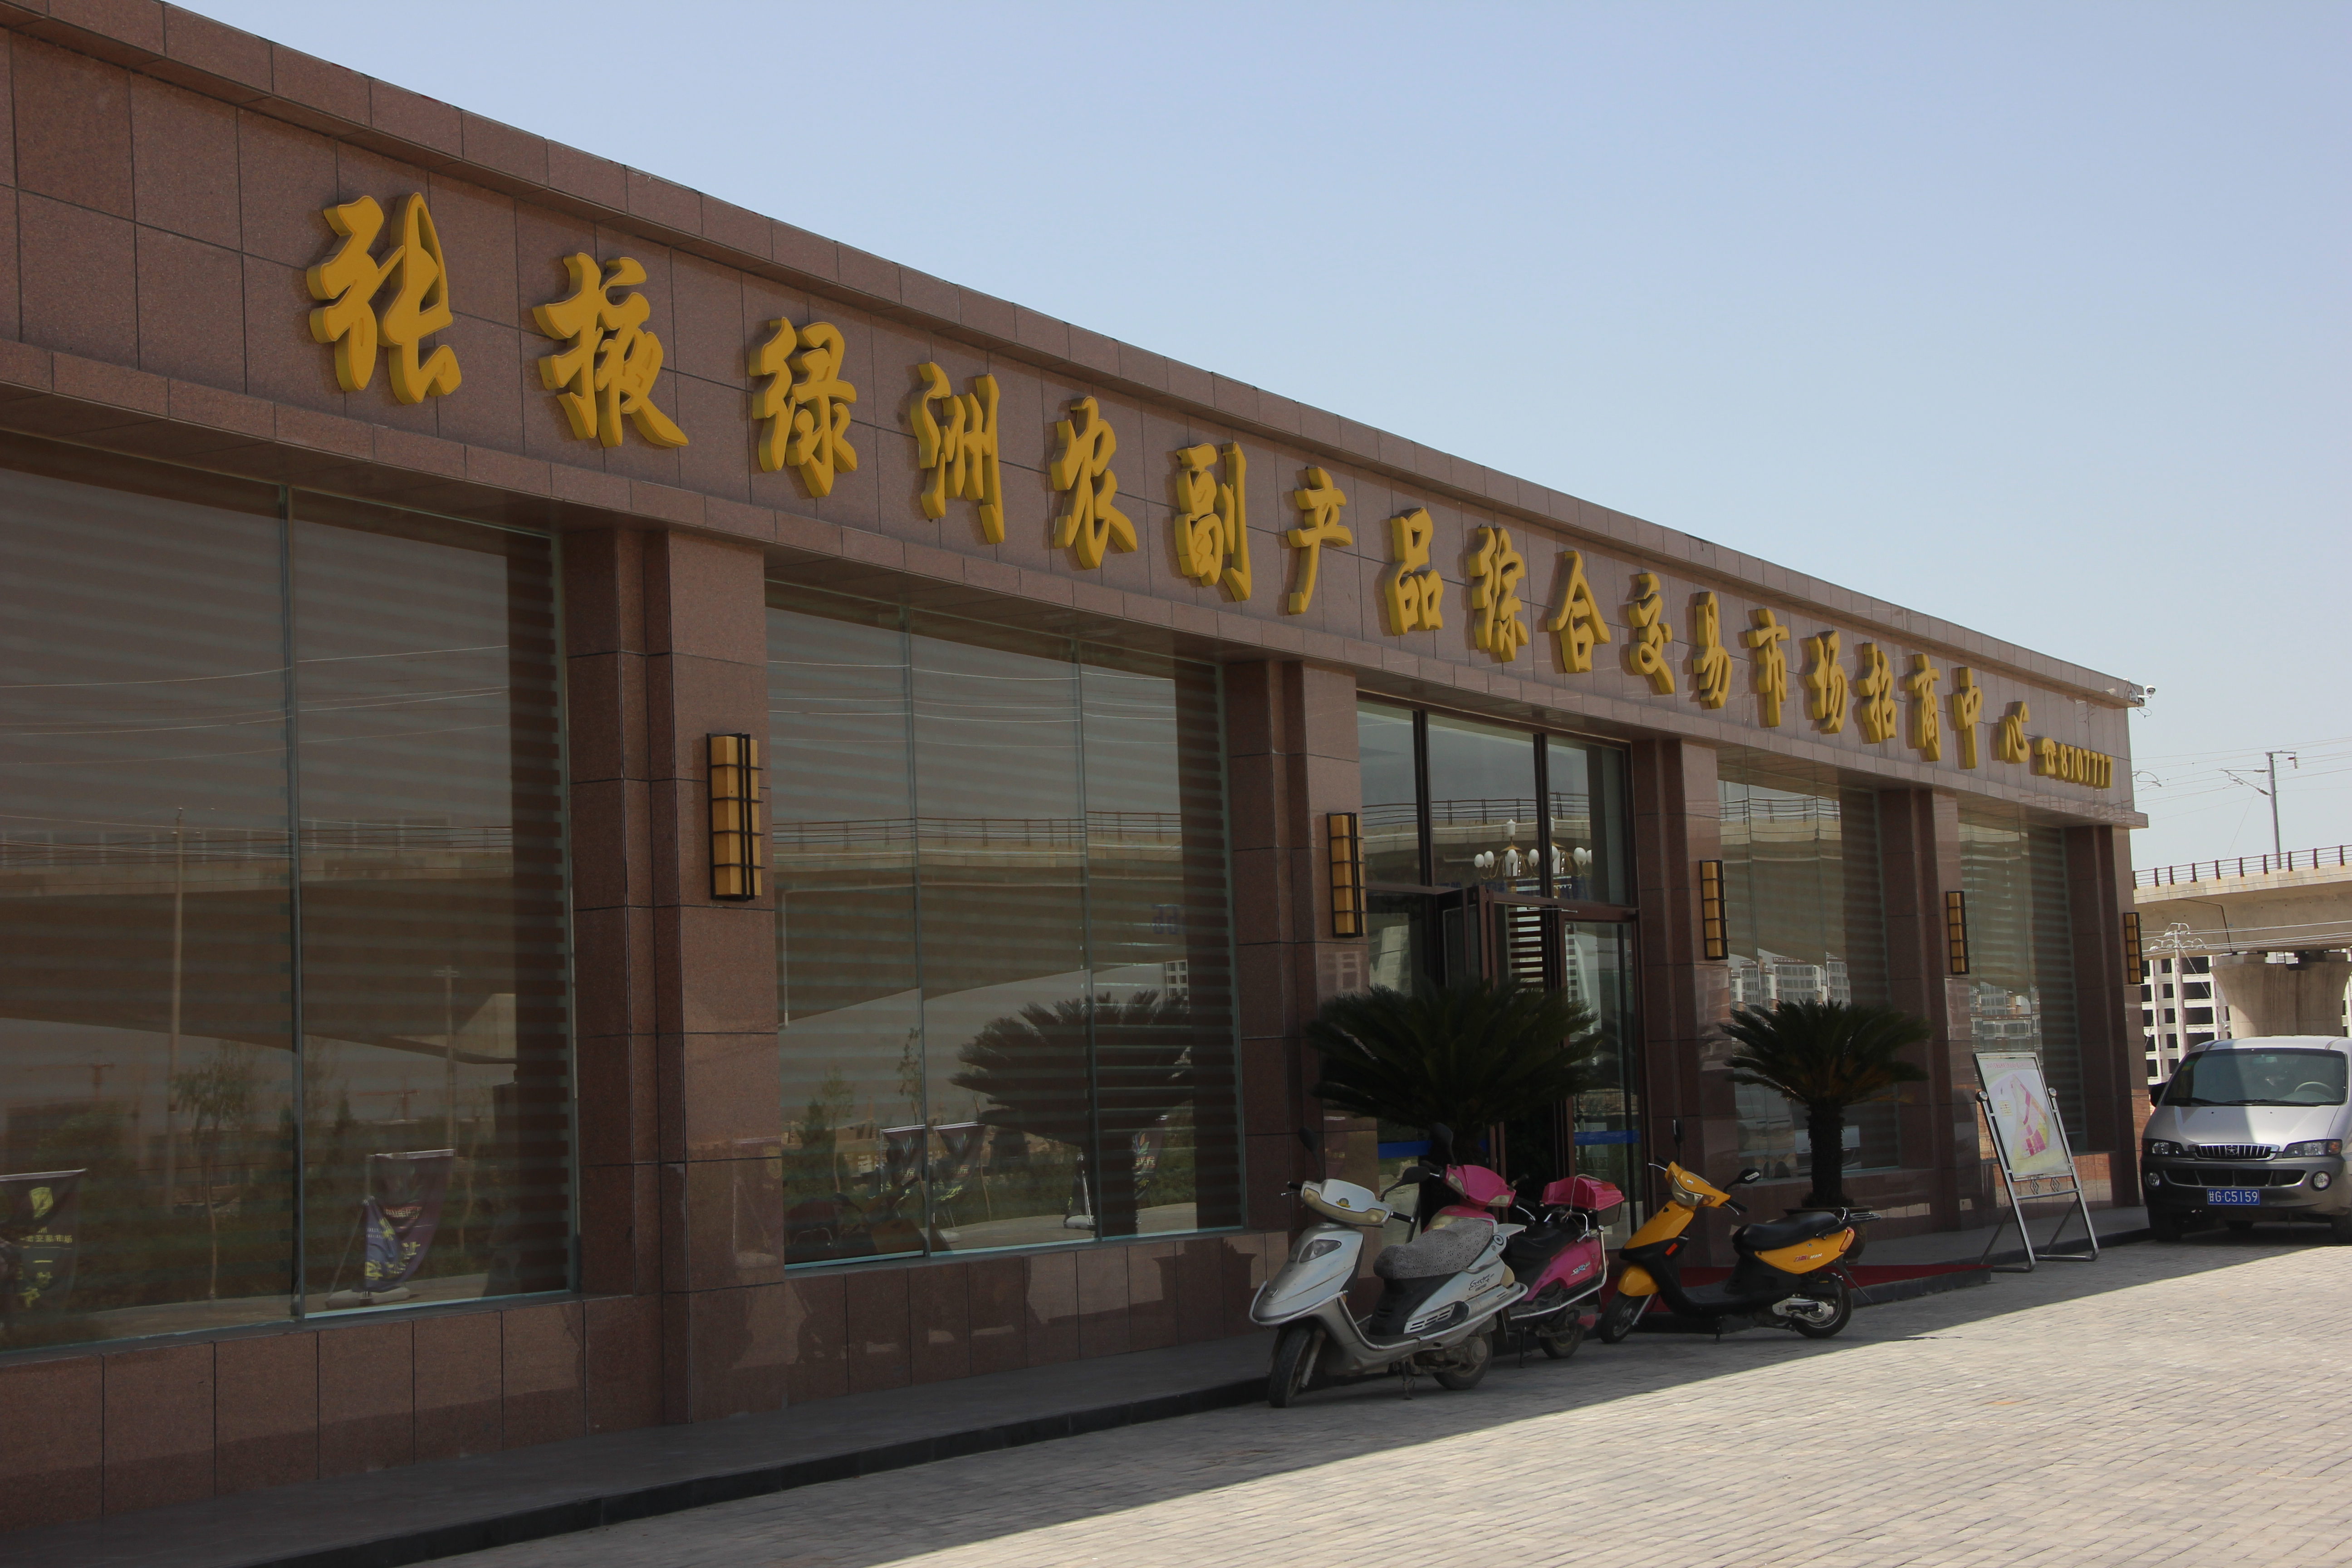 甘肃张掖绿洲农副产品综合交易市场正在成为河西走廊“菜篮子”交易“航母”